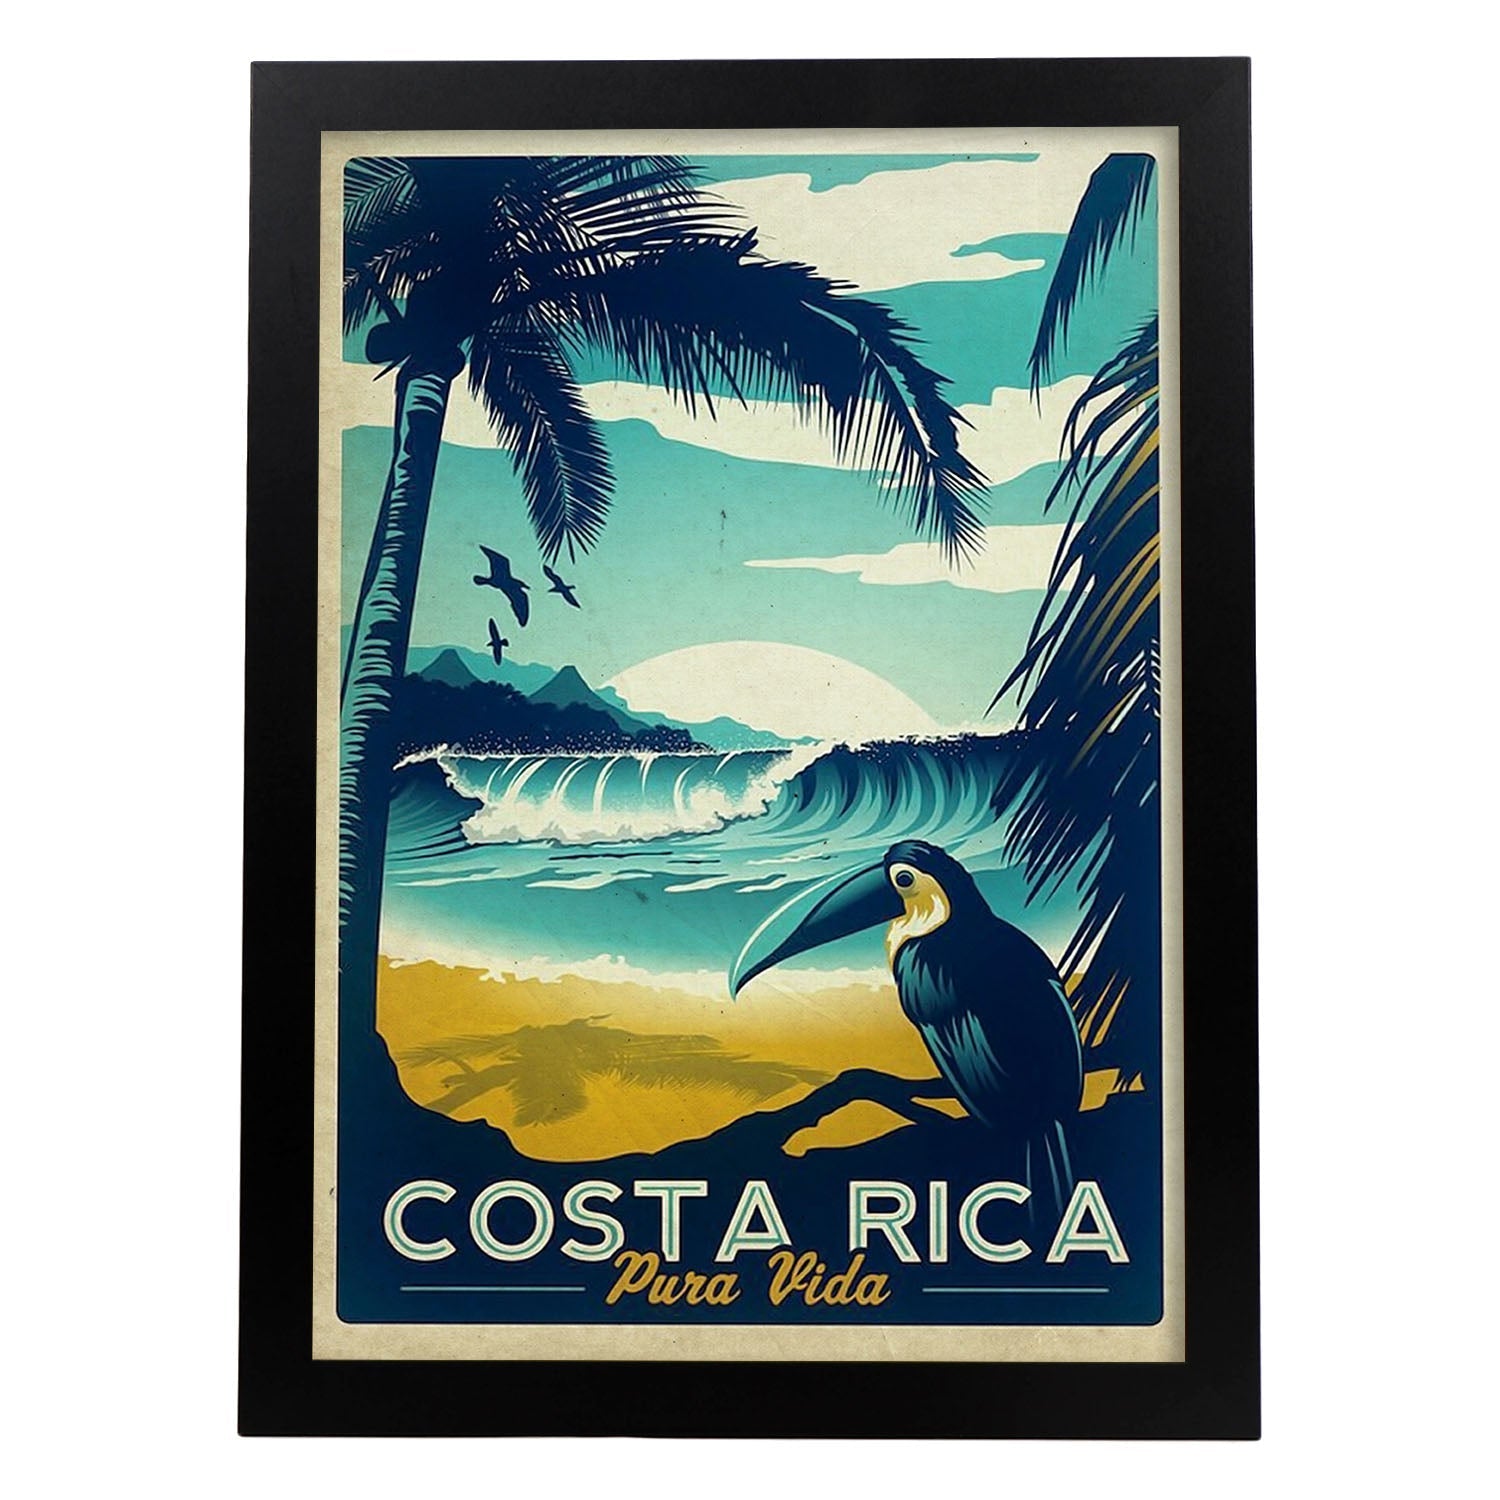 Poster vintage de Costa rica. con imágenes vintage y de publicidad antigua.-Artwork-Nacnic-A3-Marco Negro-Nacnic Estudio SL